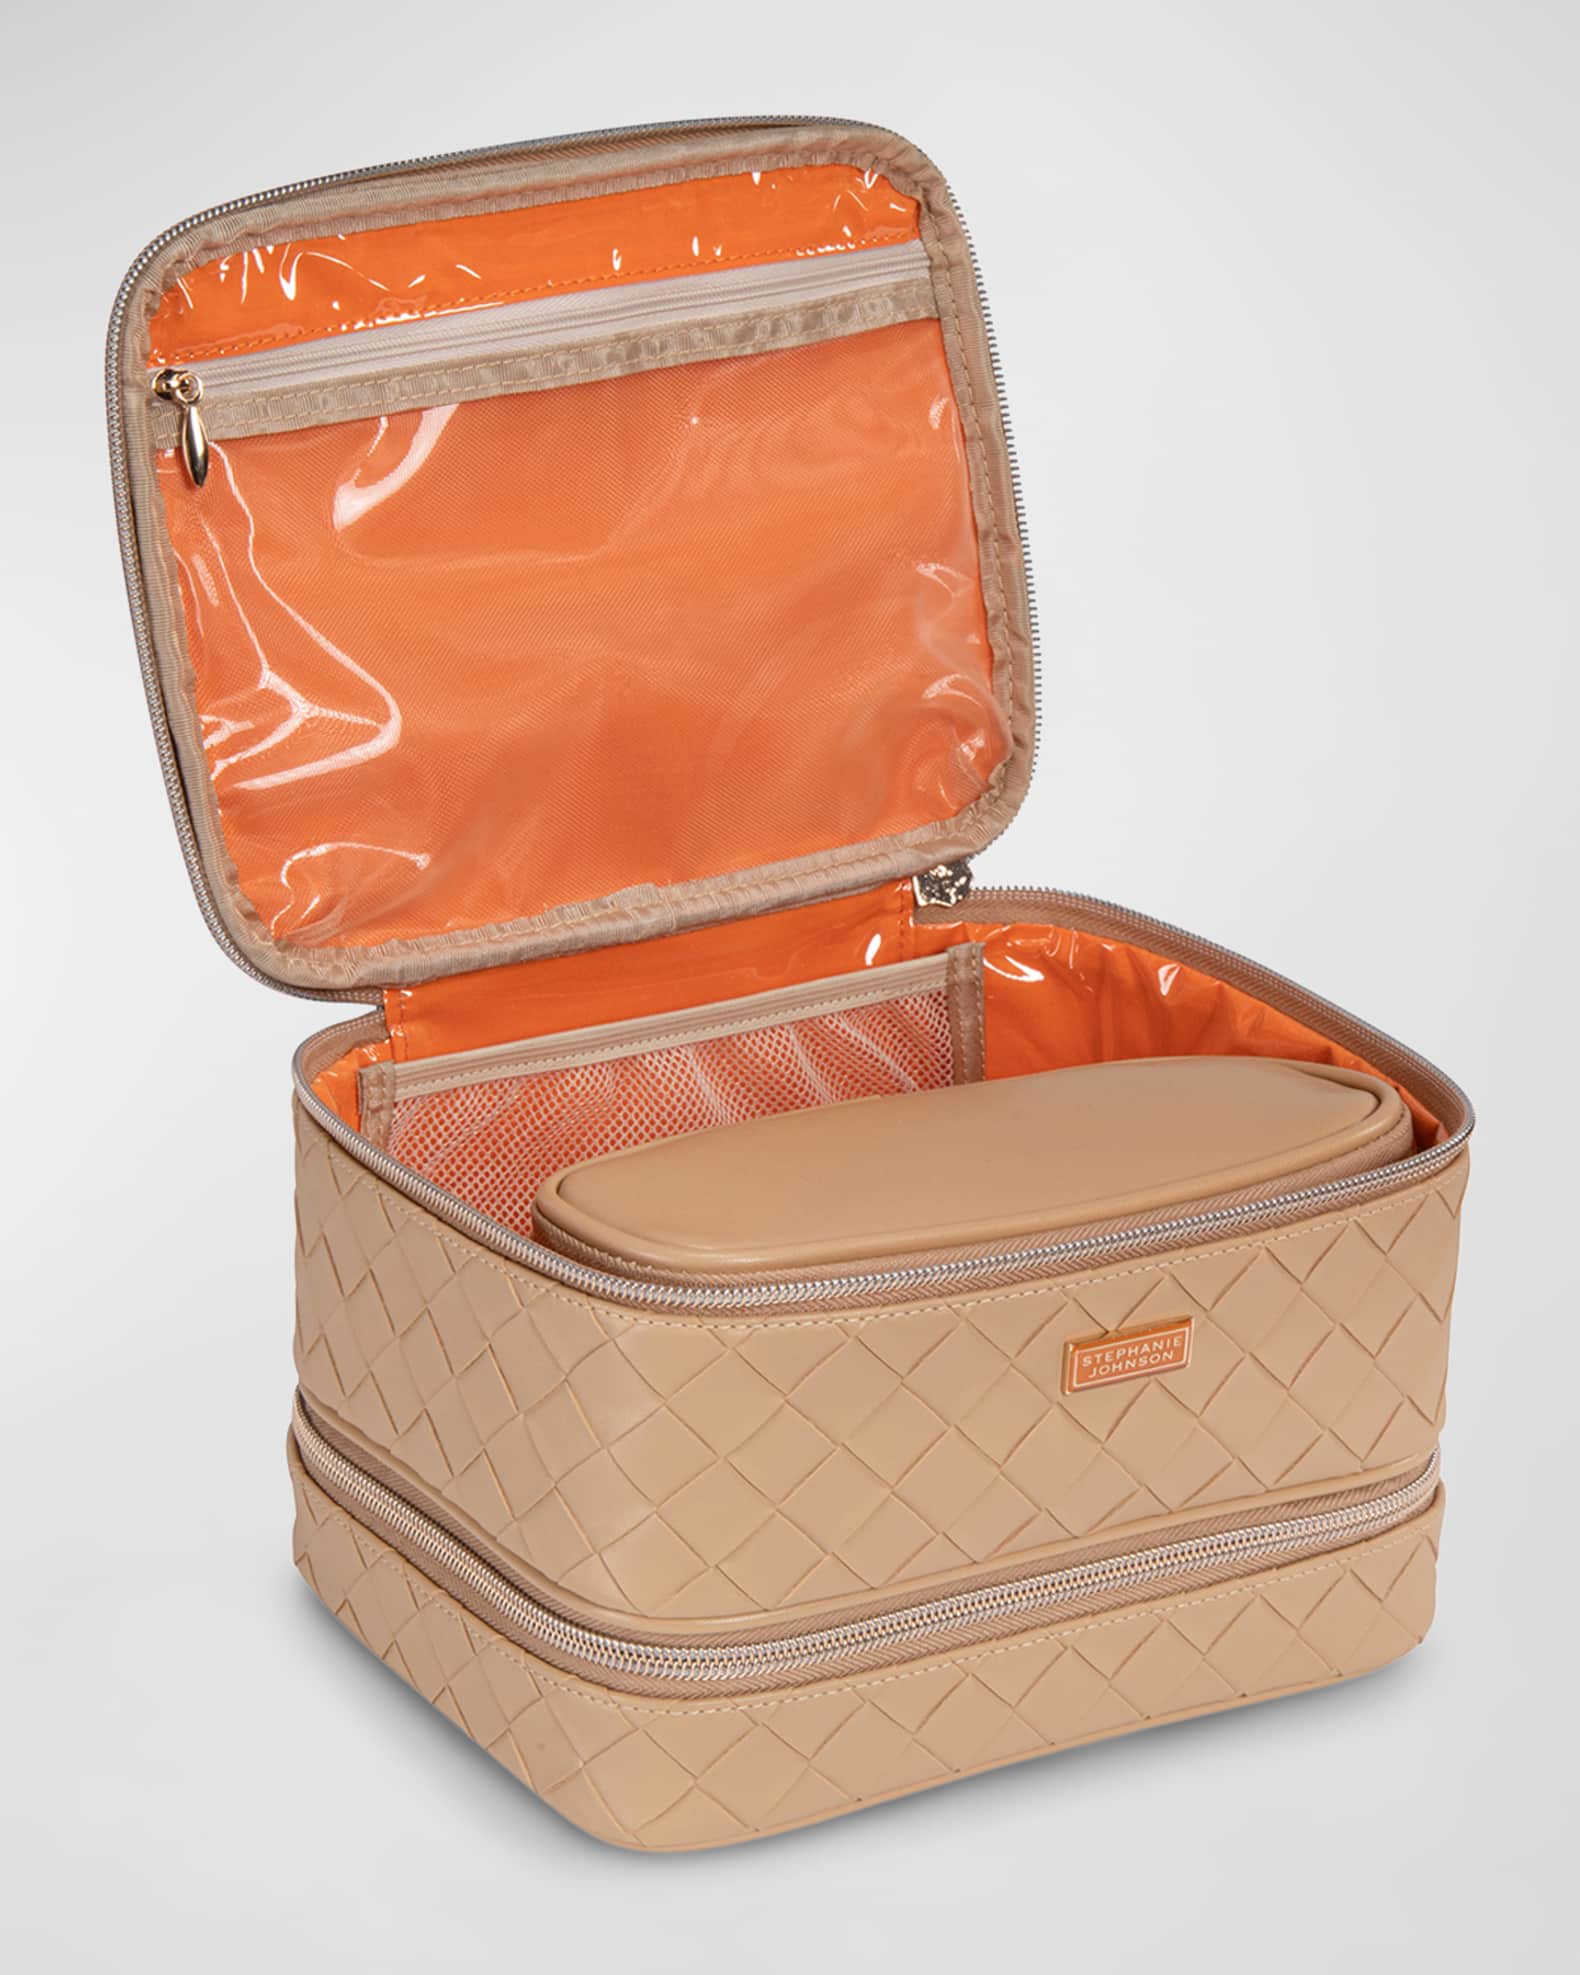 Victoria's Secret Fashion Show Bag Train-case  Train case, Black makeup bag,  Travel cases bags